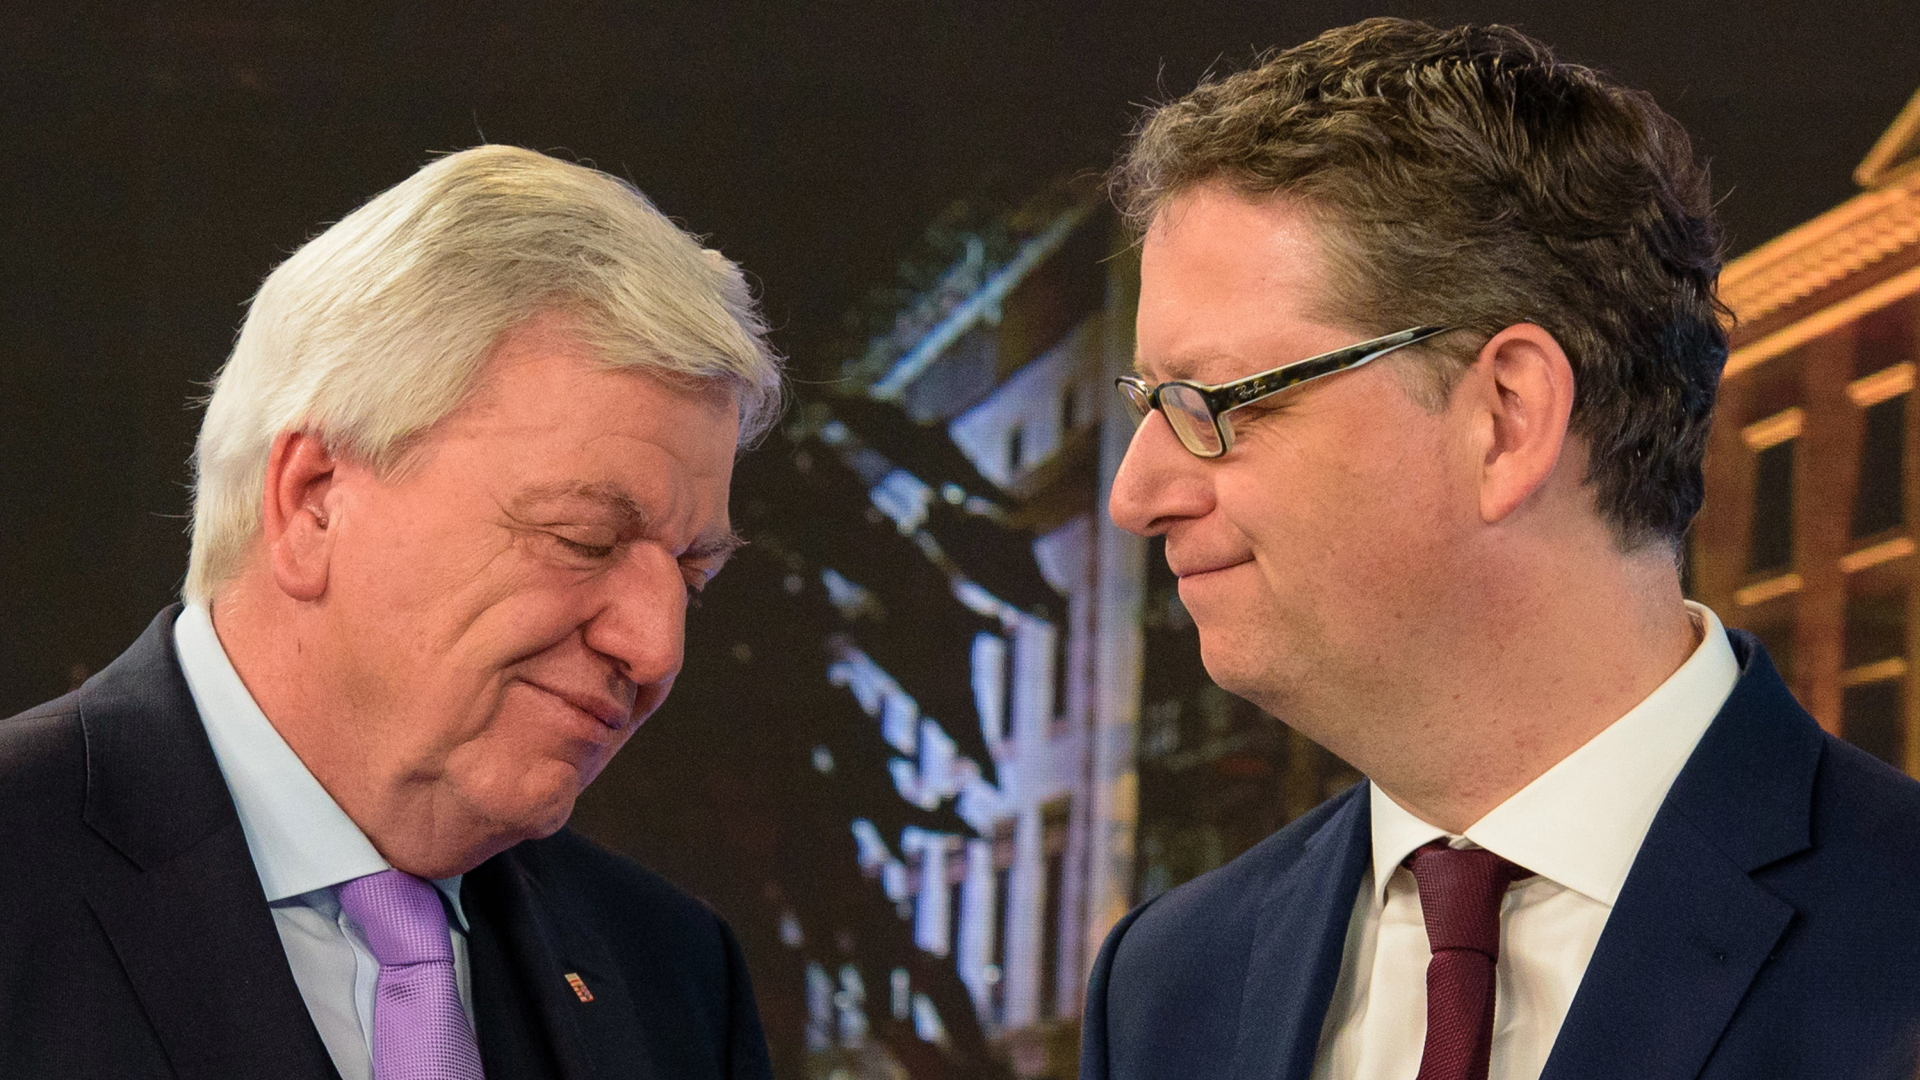 Die Spitzenkandidaten der Parteien Thorsten Schäfer-Gümbel (SPD,r) und Volker Bouffier (CDU), Ministerpräsident von Hessen, stehen vor Beginn der ARD-Fernsehrunde nebeneinander.  | Bildquelle: dpa